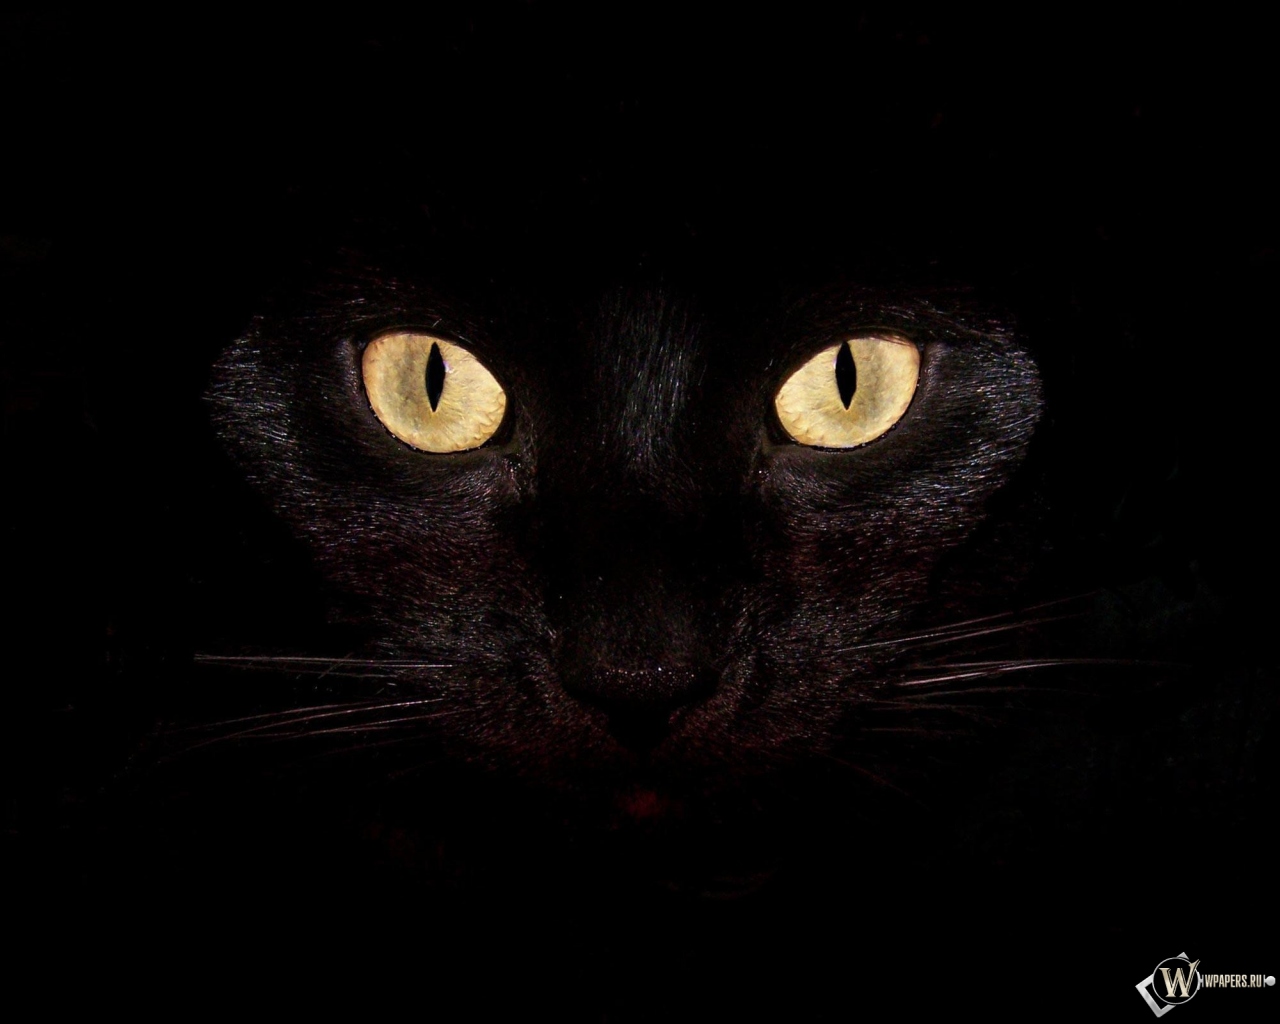 Черная кошка на чернофм фоне 1280x1024